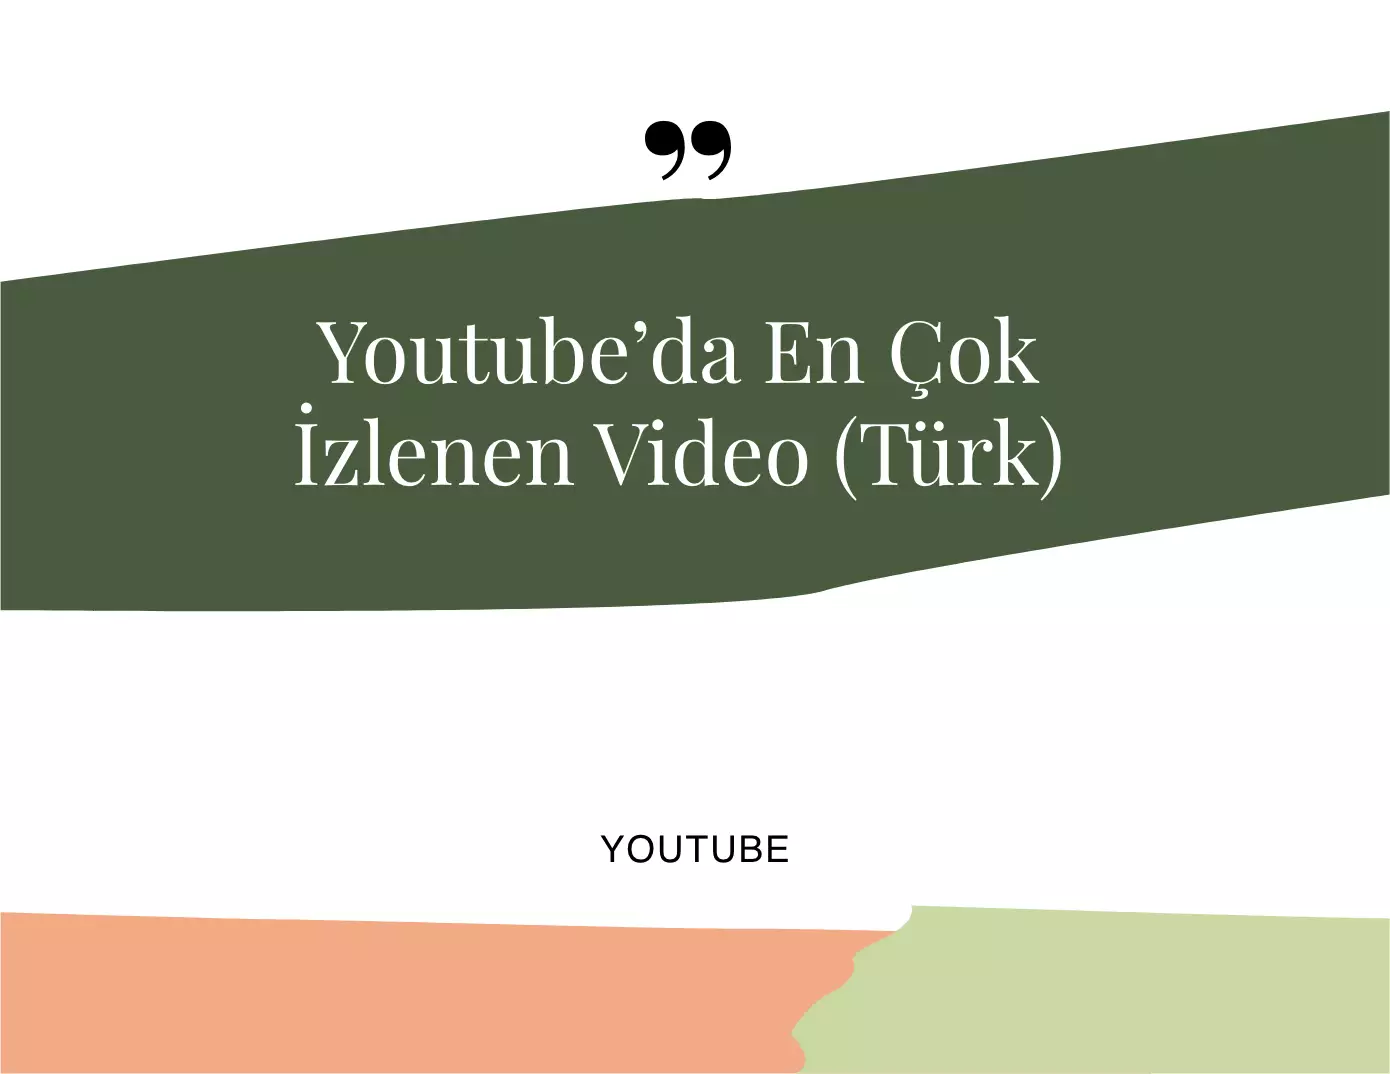 Youtube'da En Çok İzlenen Video (Türk)